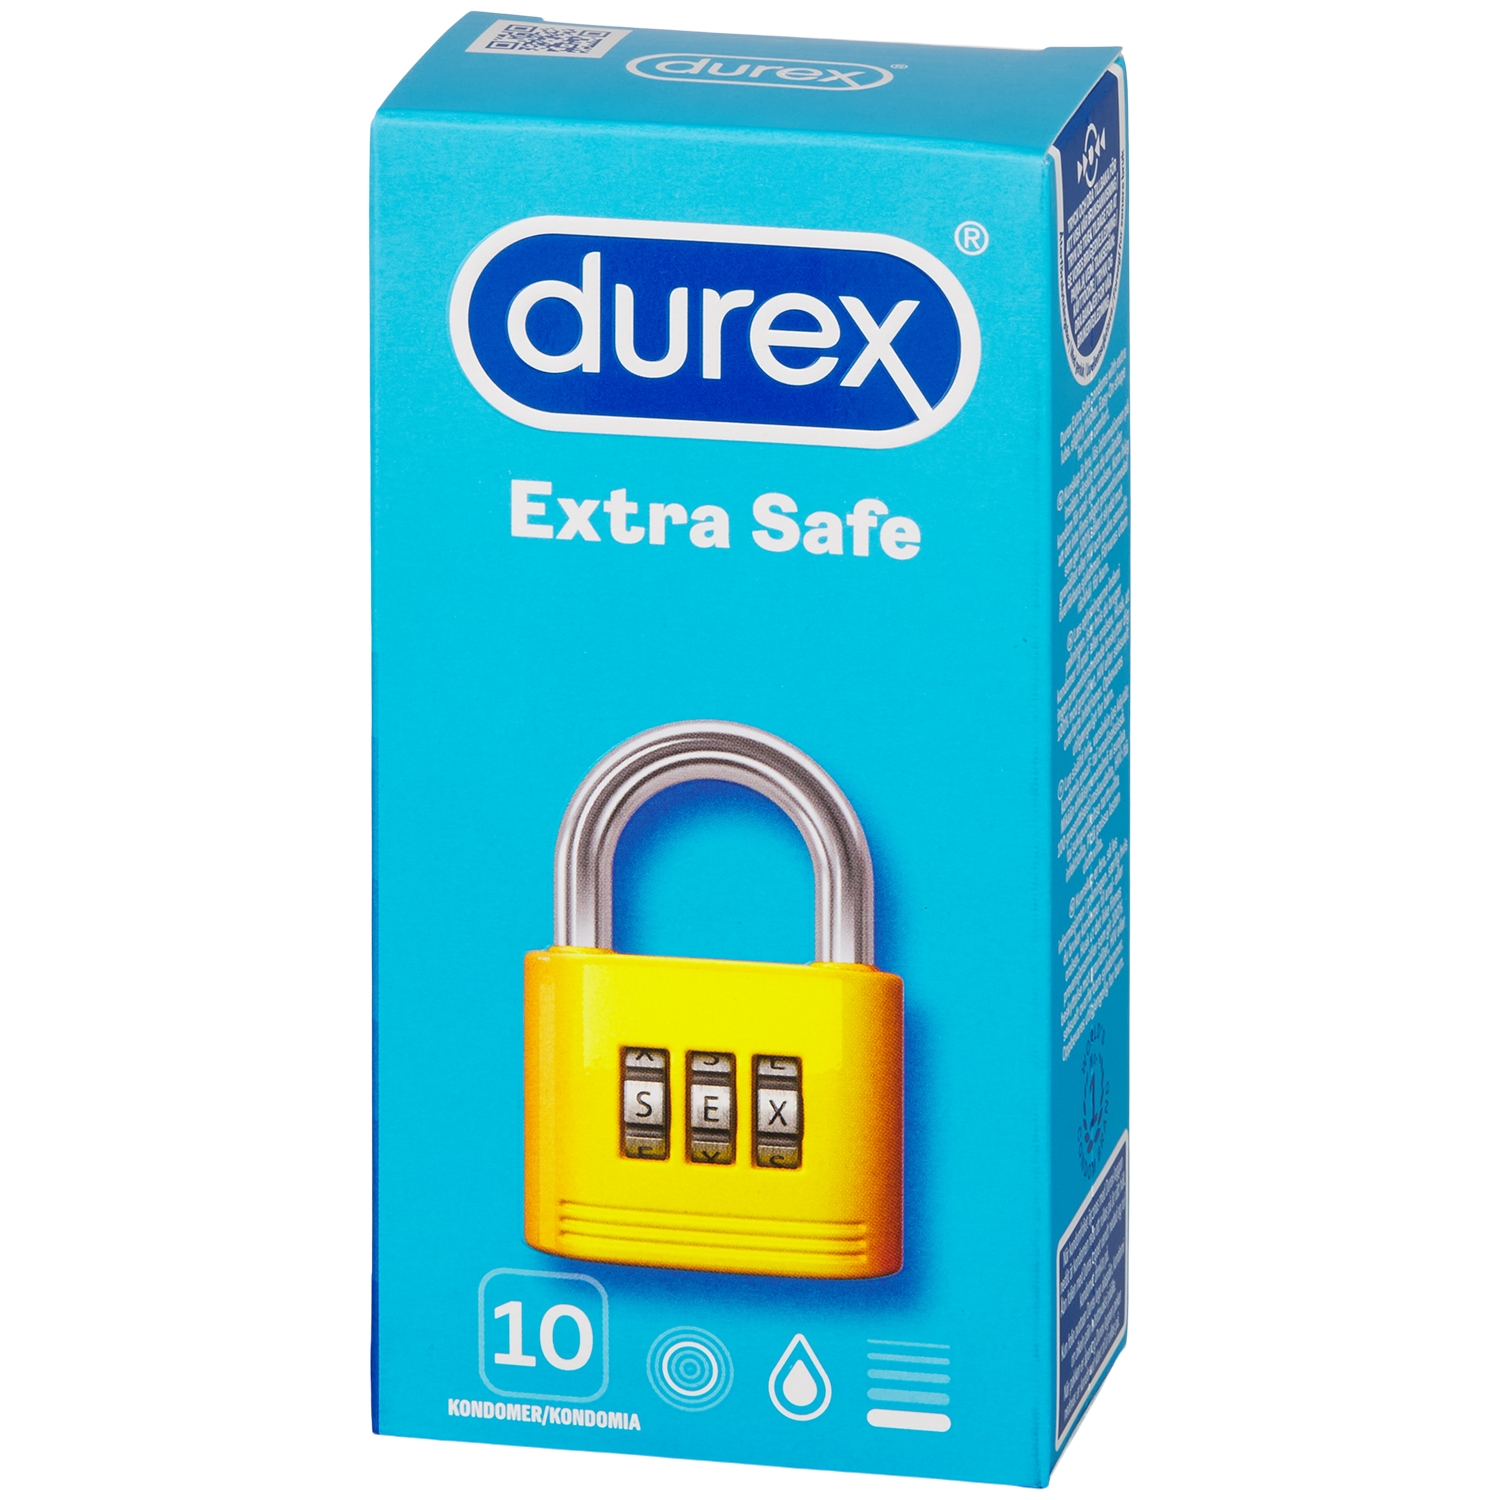 Durex Extra Safe Kondomer 10 stk - Klar thumbnail